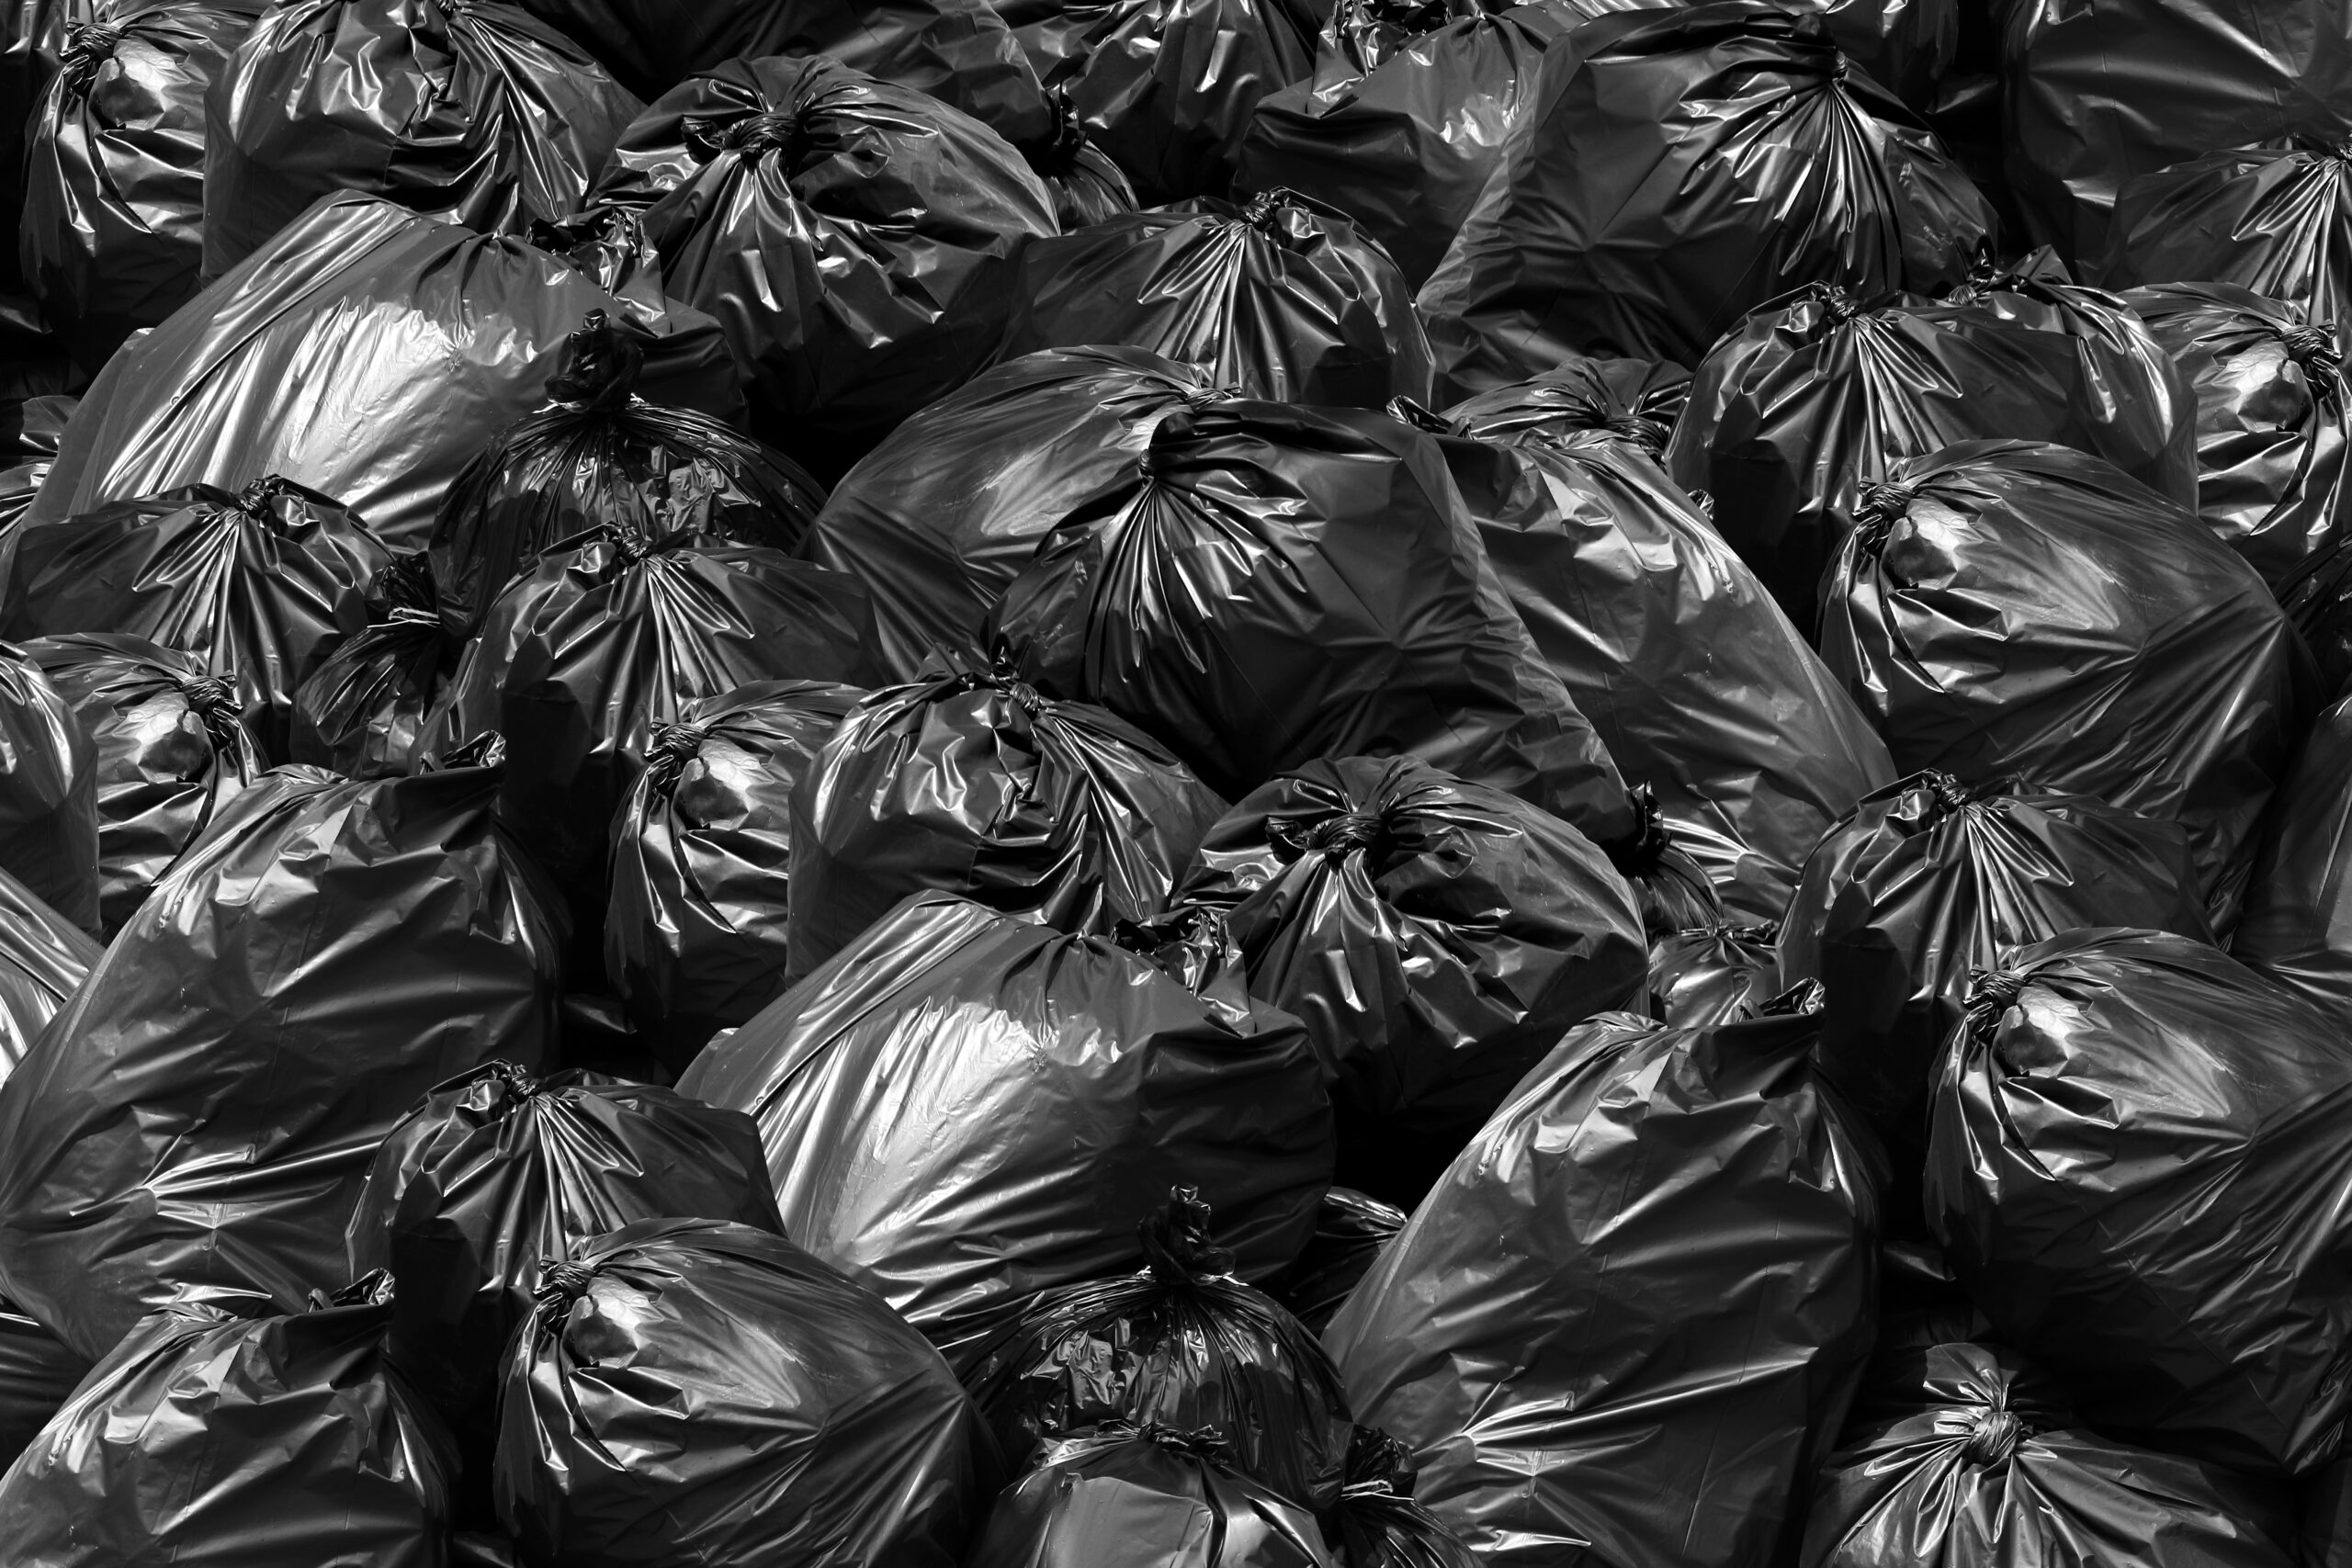 Black Garbage Bags | G&G Garbage